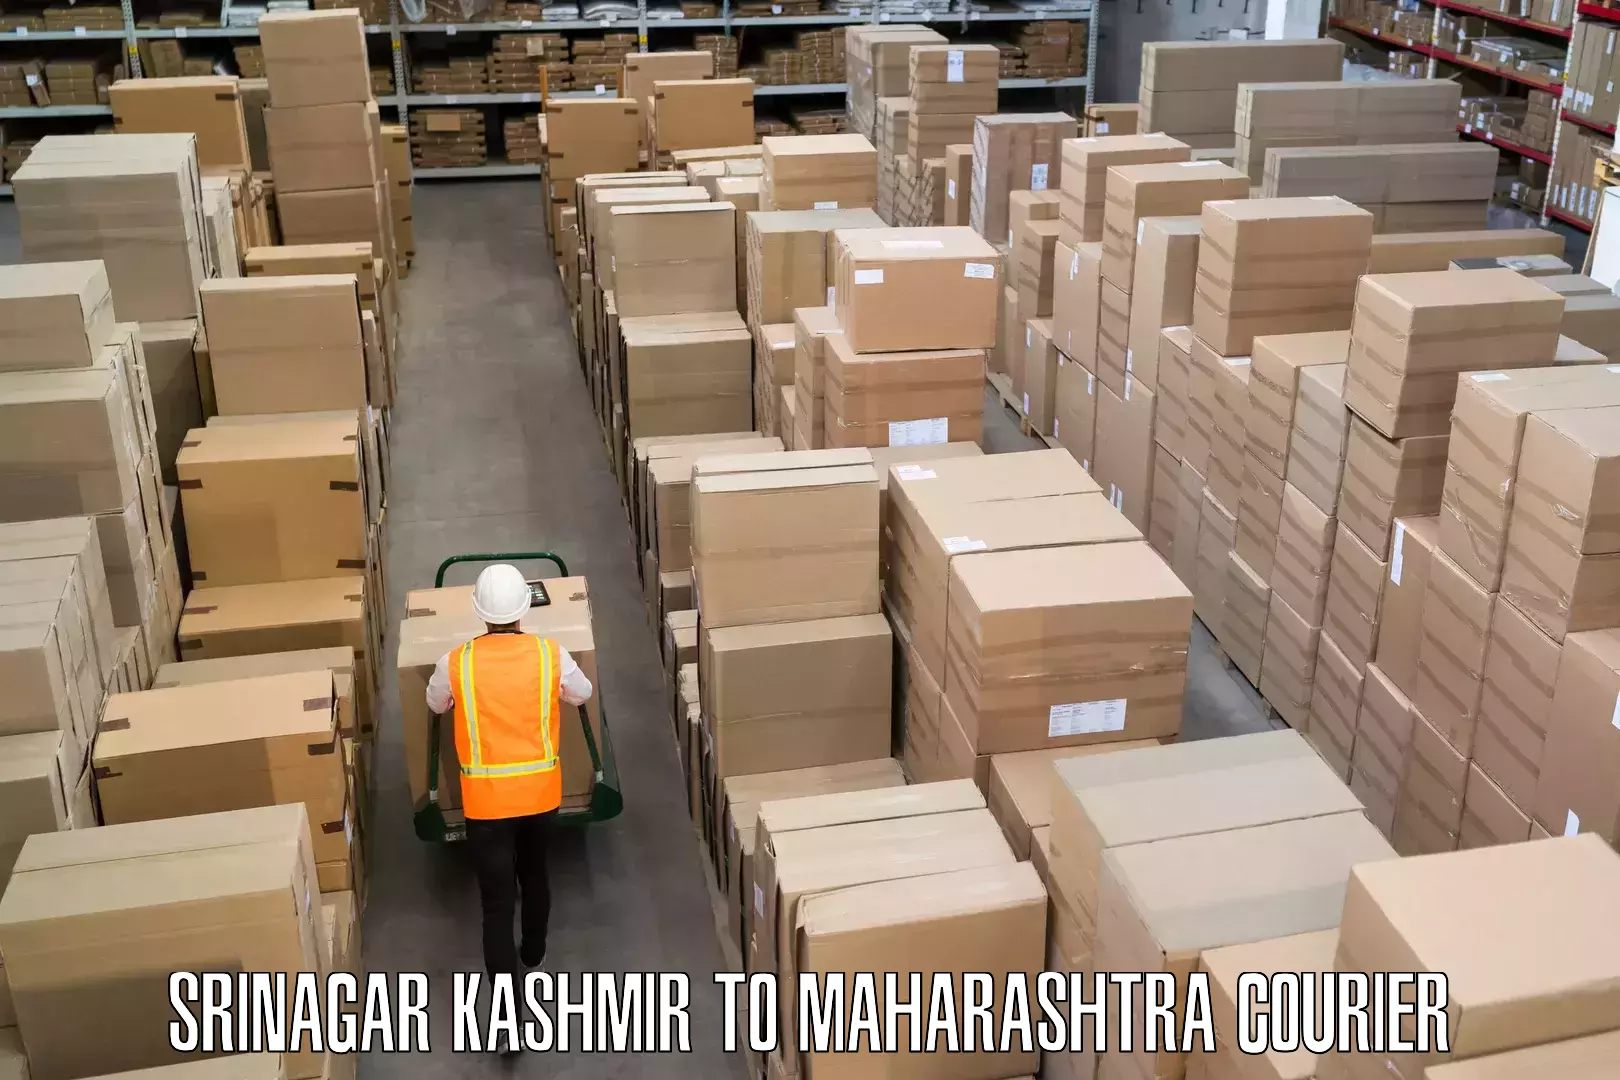 Baggage delivery management Srinagar Kashmir to Maharashtra